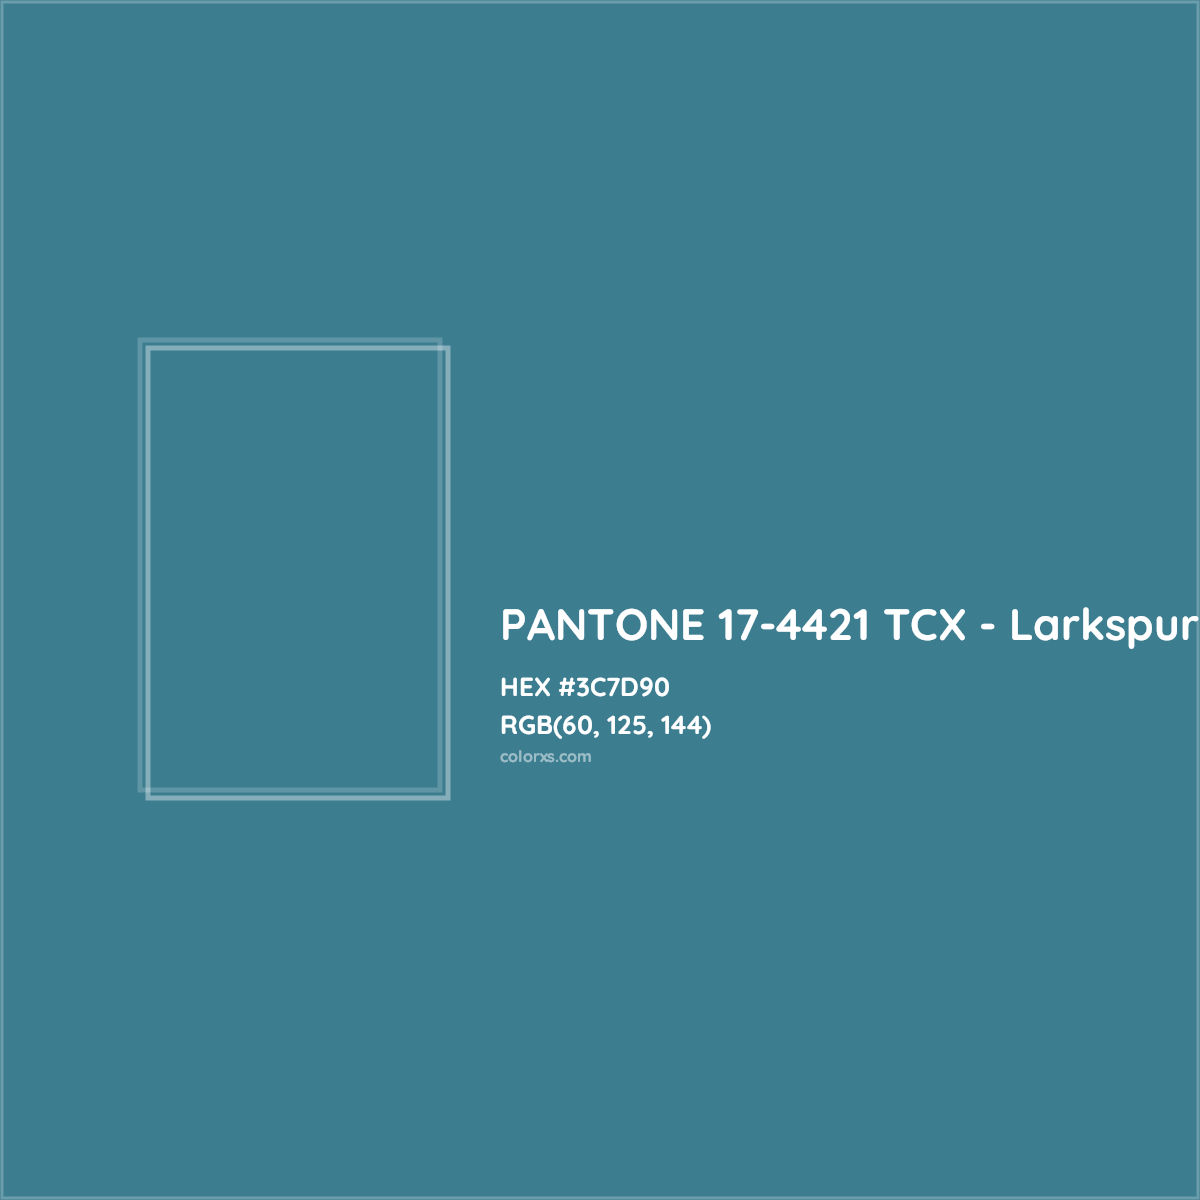 HEX #3C7D90 PANTONE 17-4421 TCX - Larkspur CMS Pantone TCX - Color Code